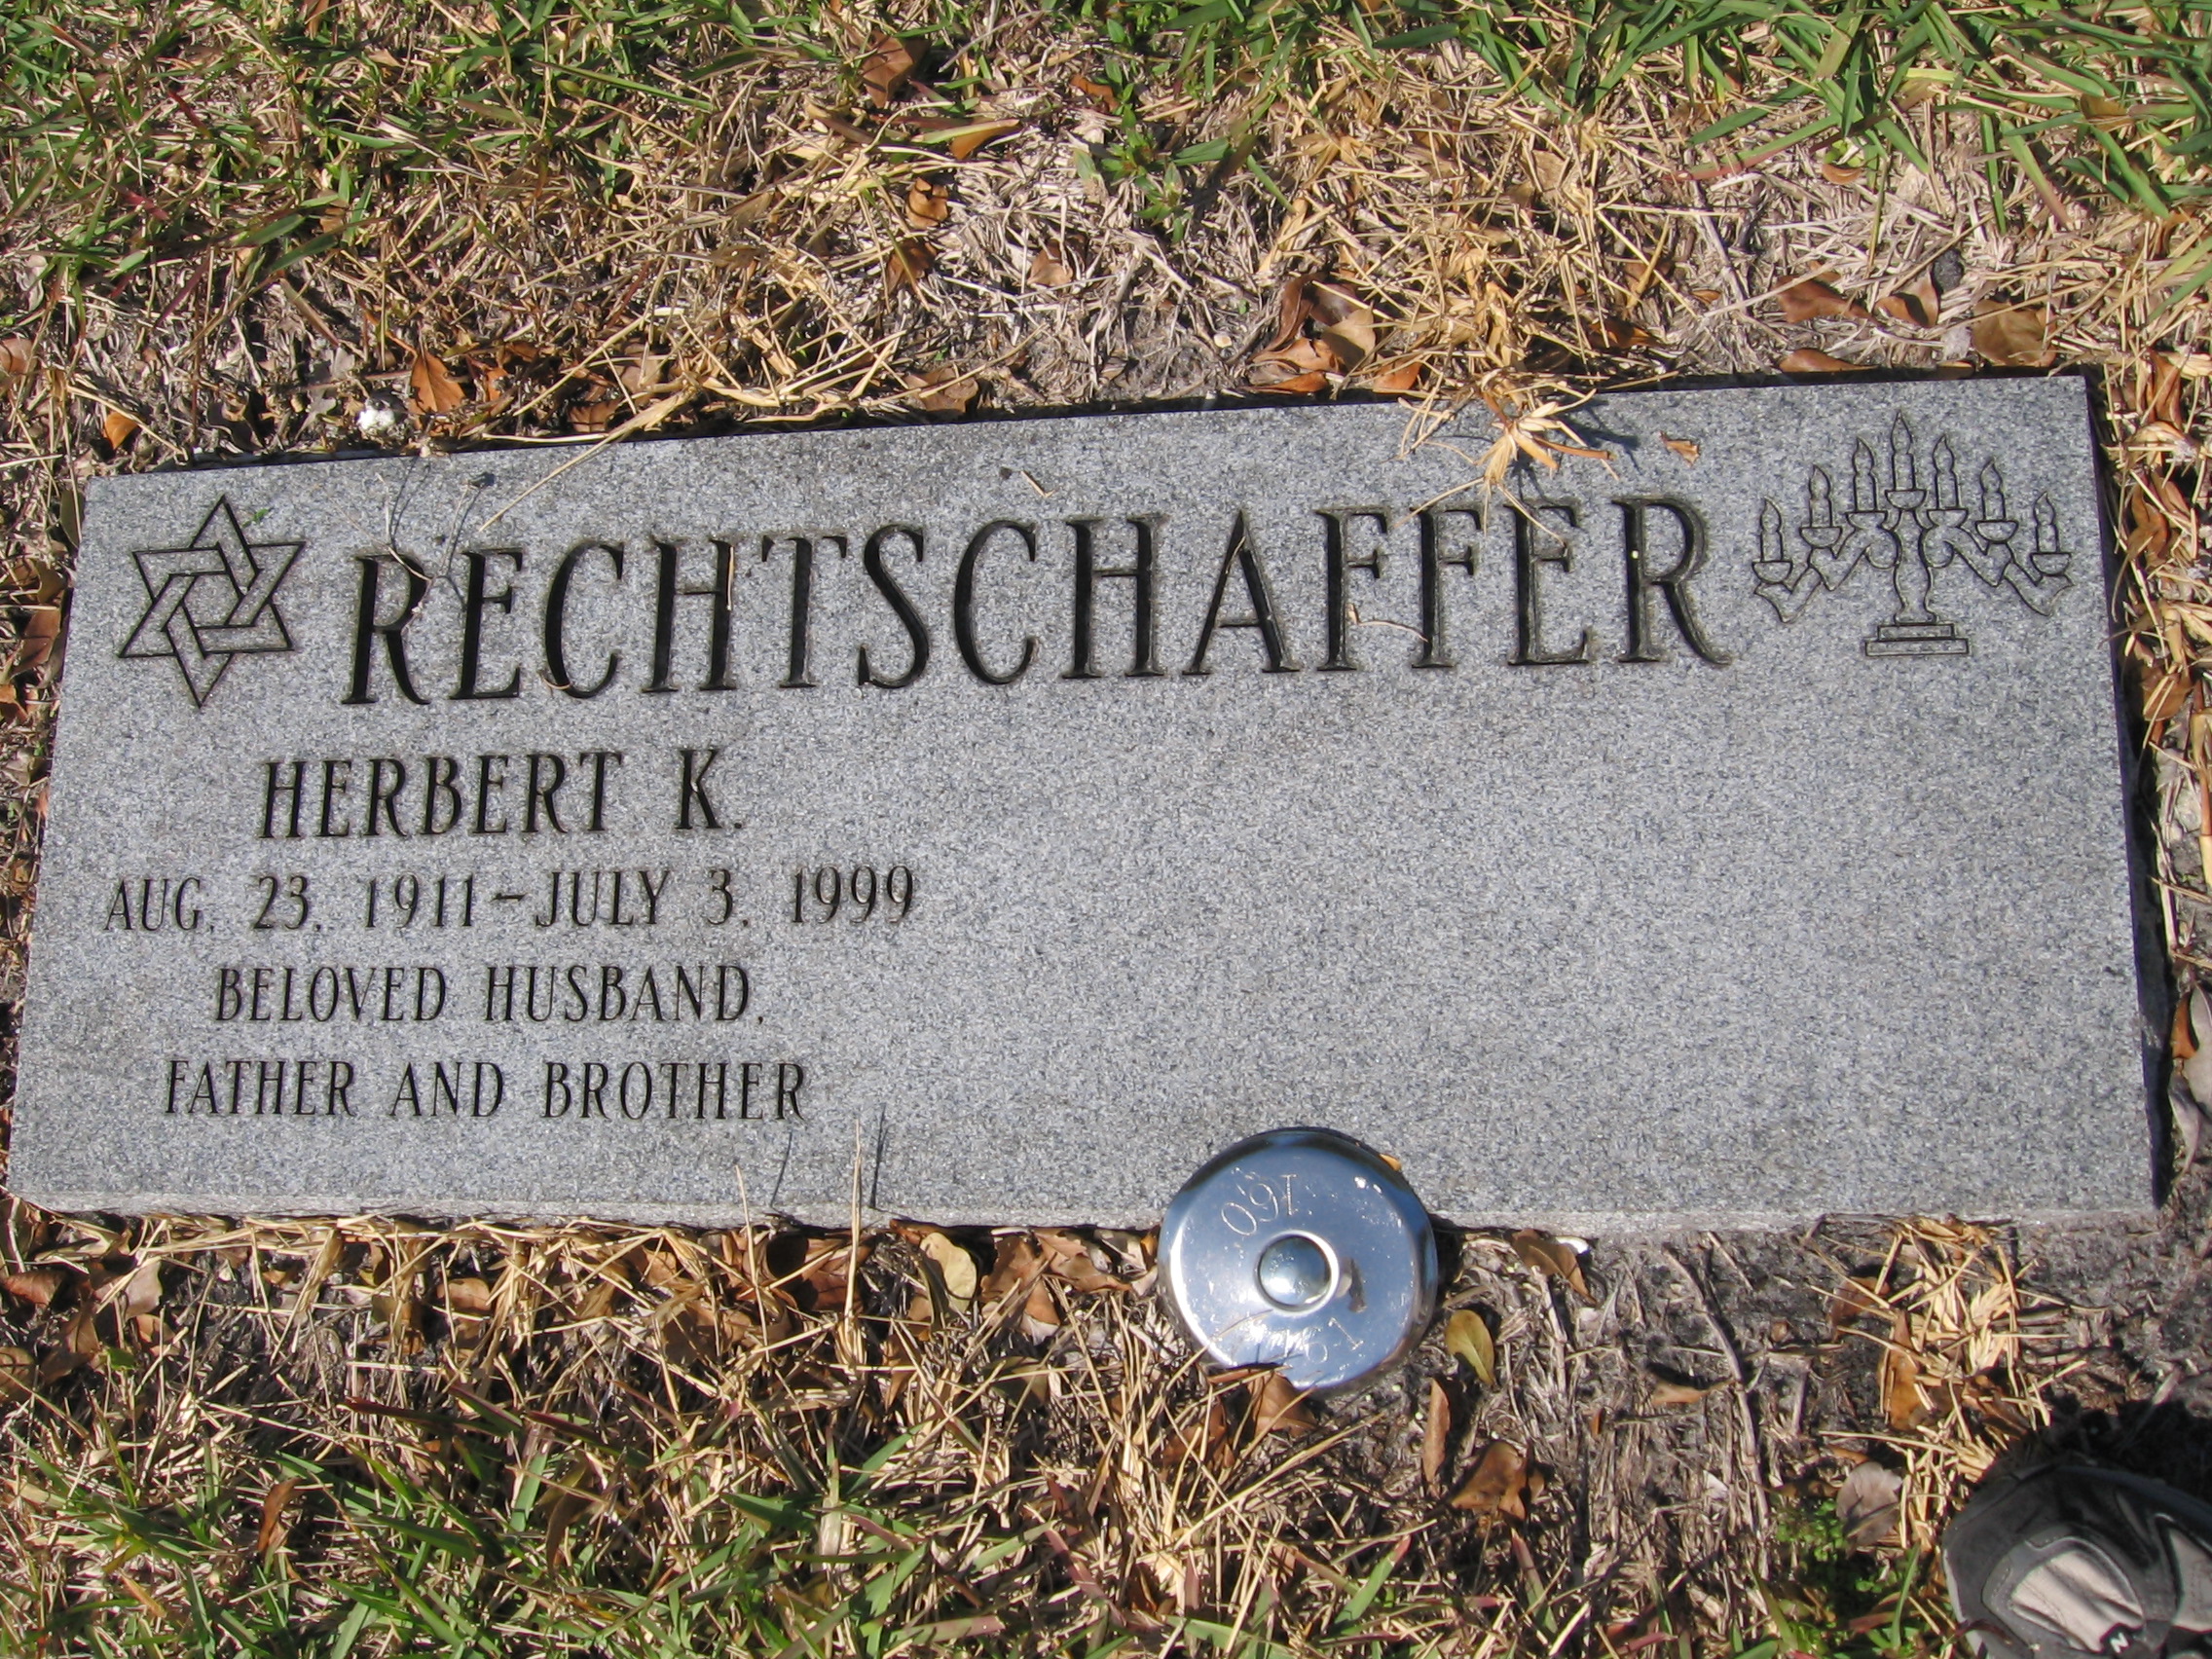 Herbert K Rechtschaffer